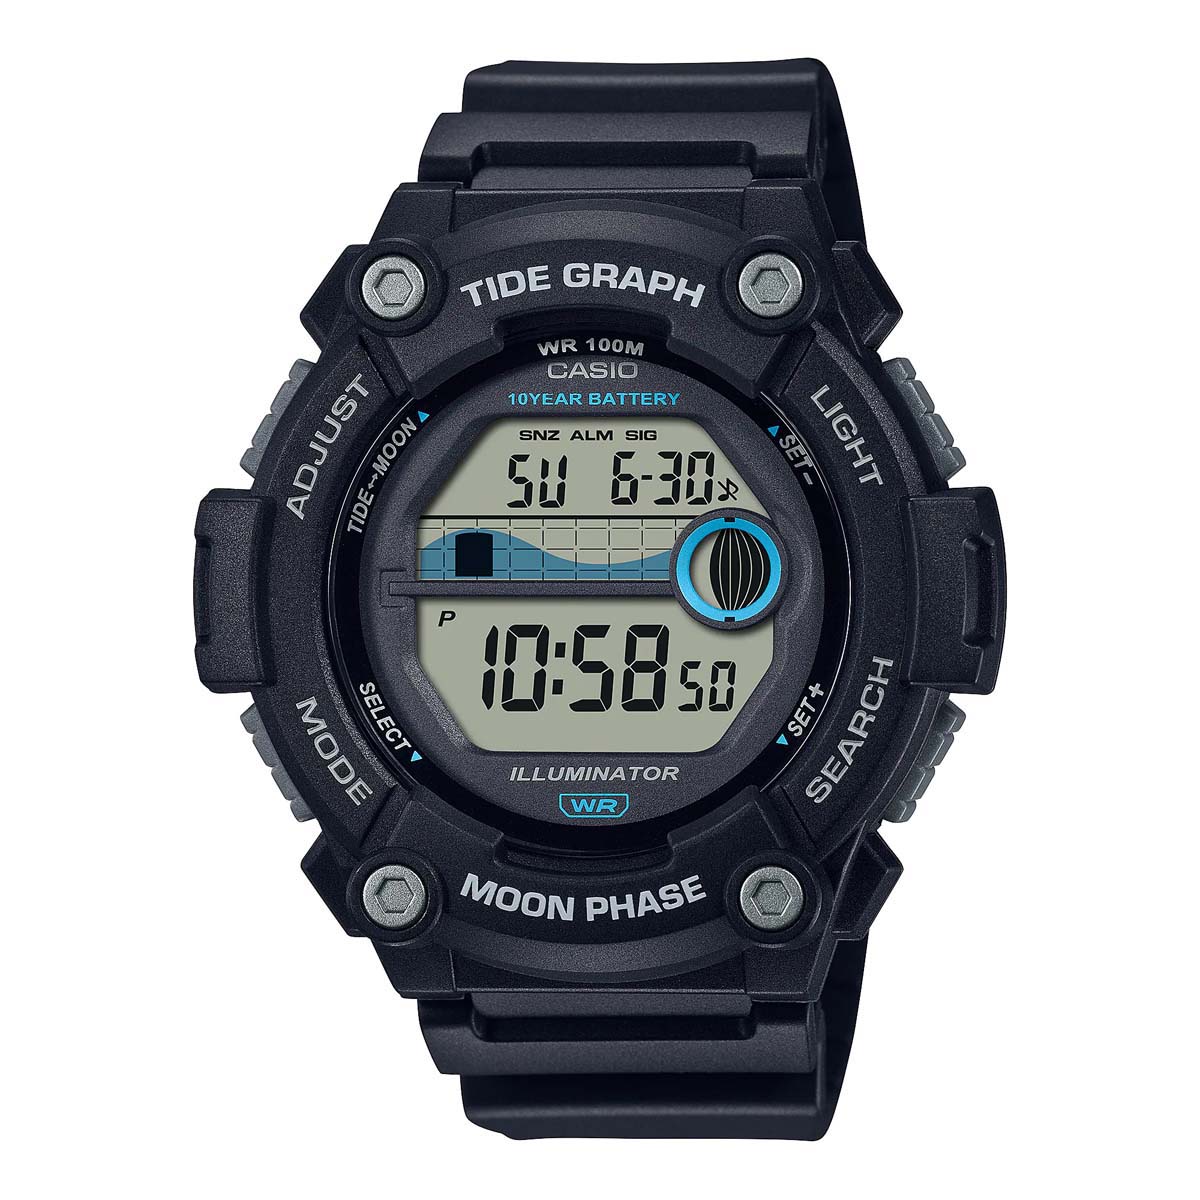 Casio WS1300H Marine Watch Black